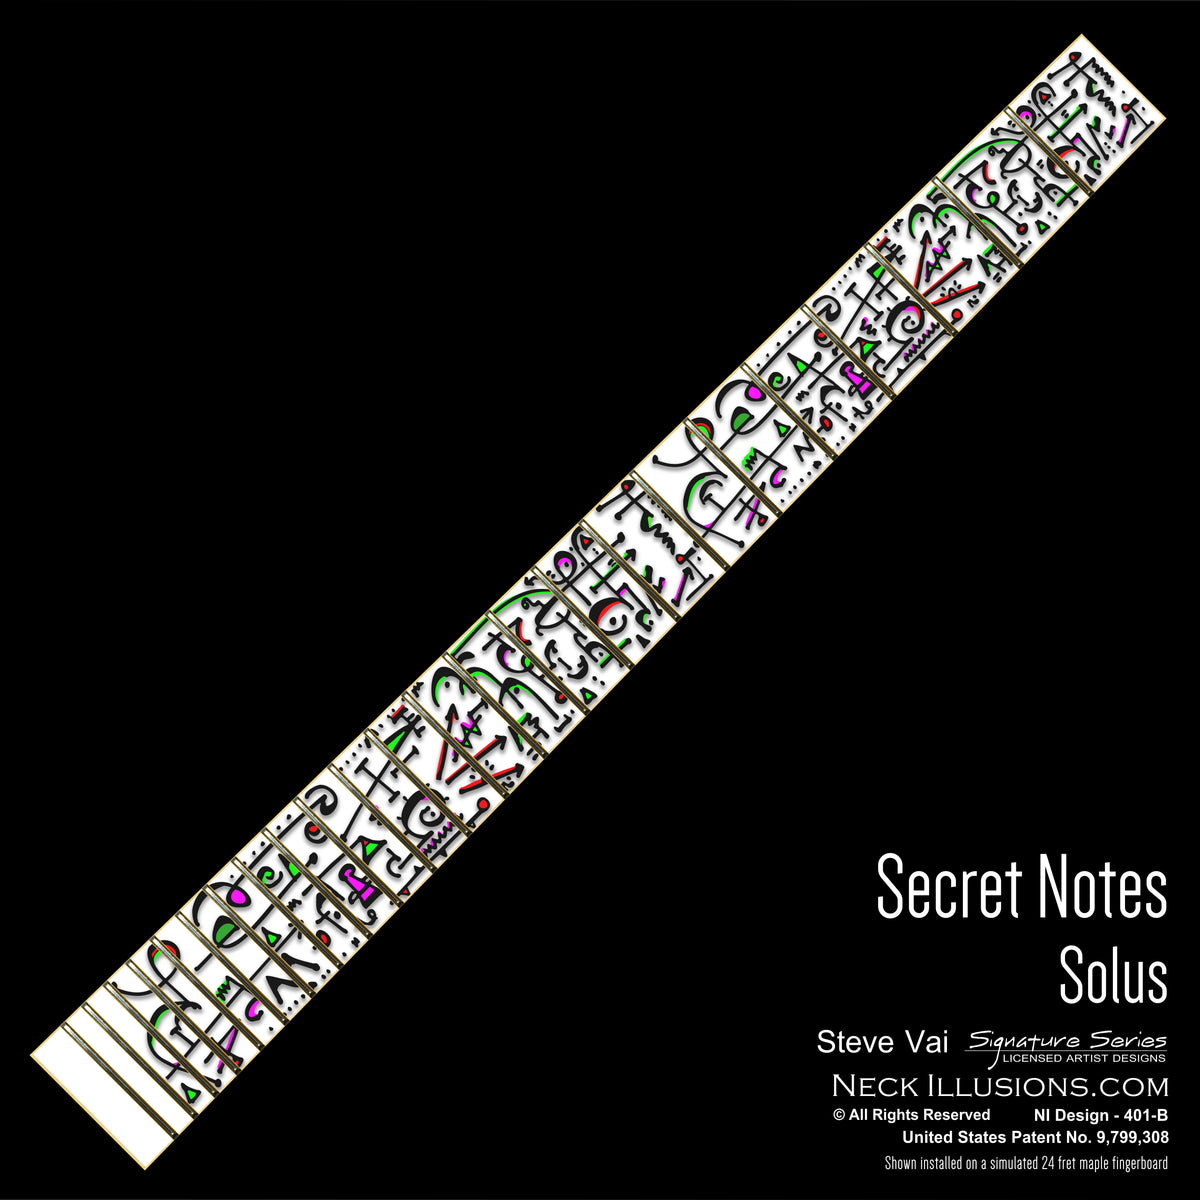 Steve Vai - Secret Notes